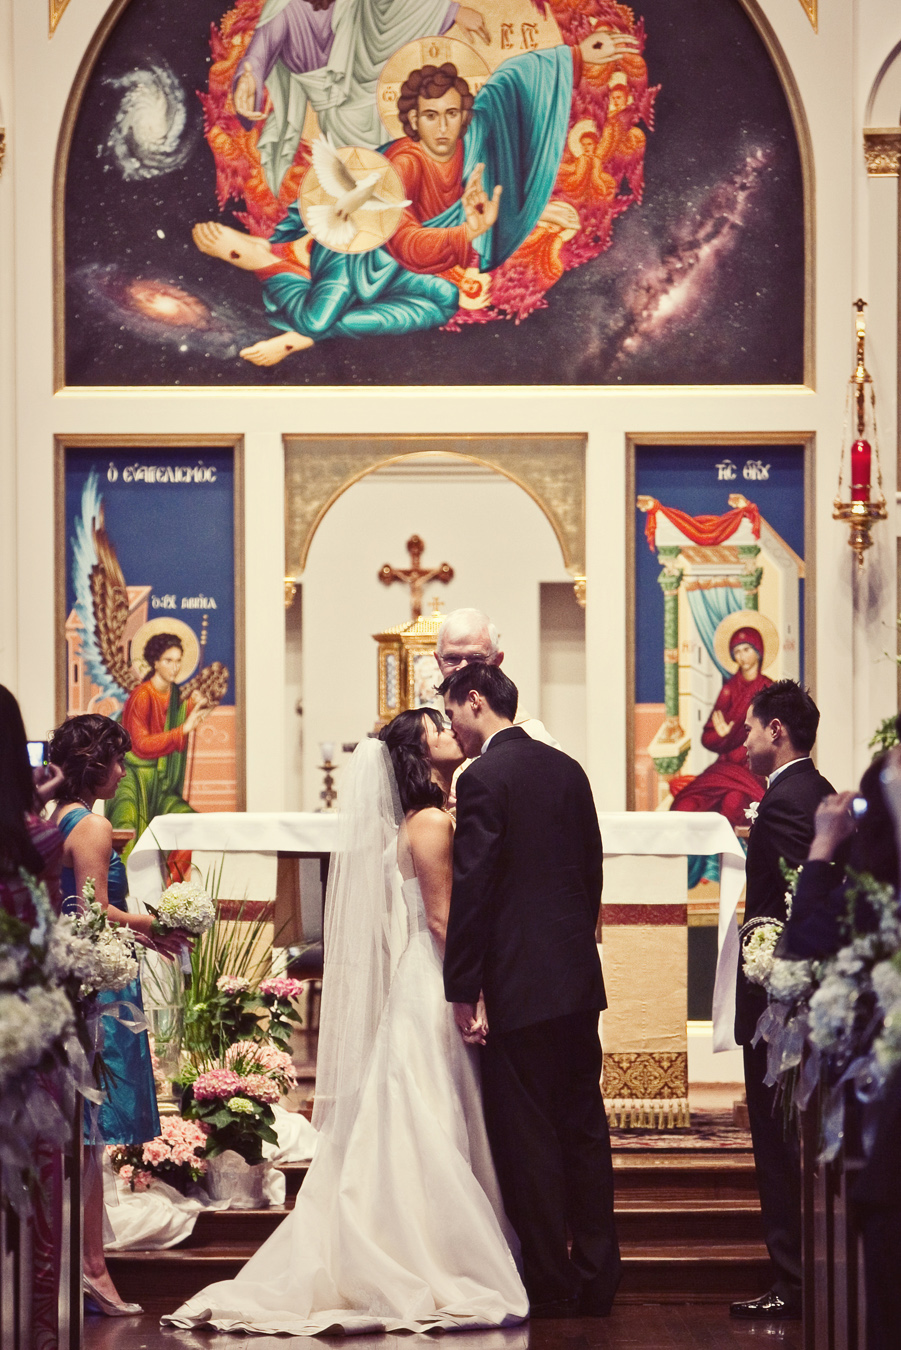 all saints catholic church wedding image, houston texas wedding image